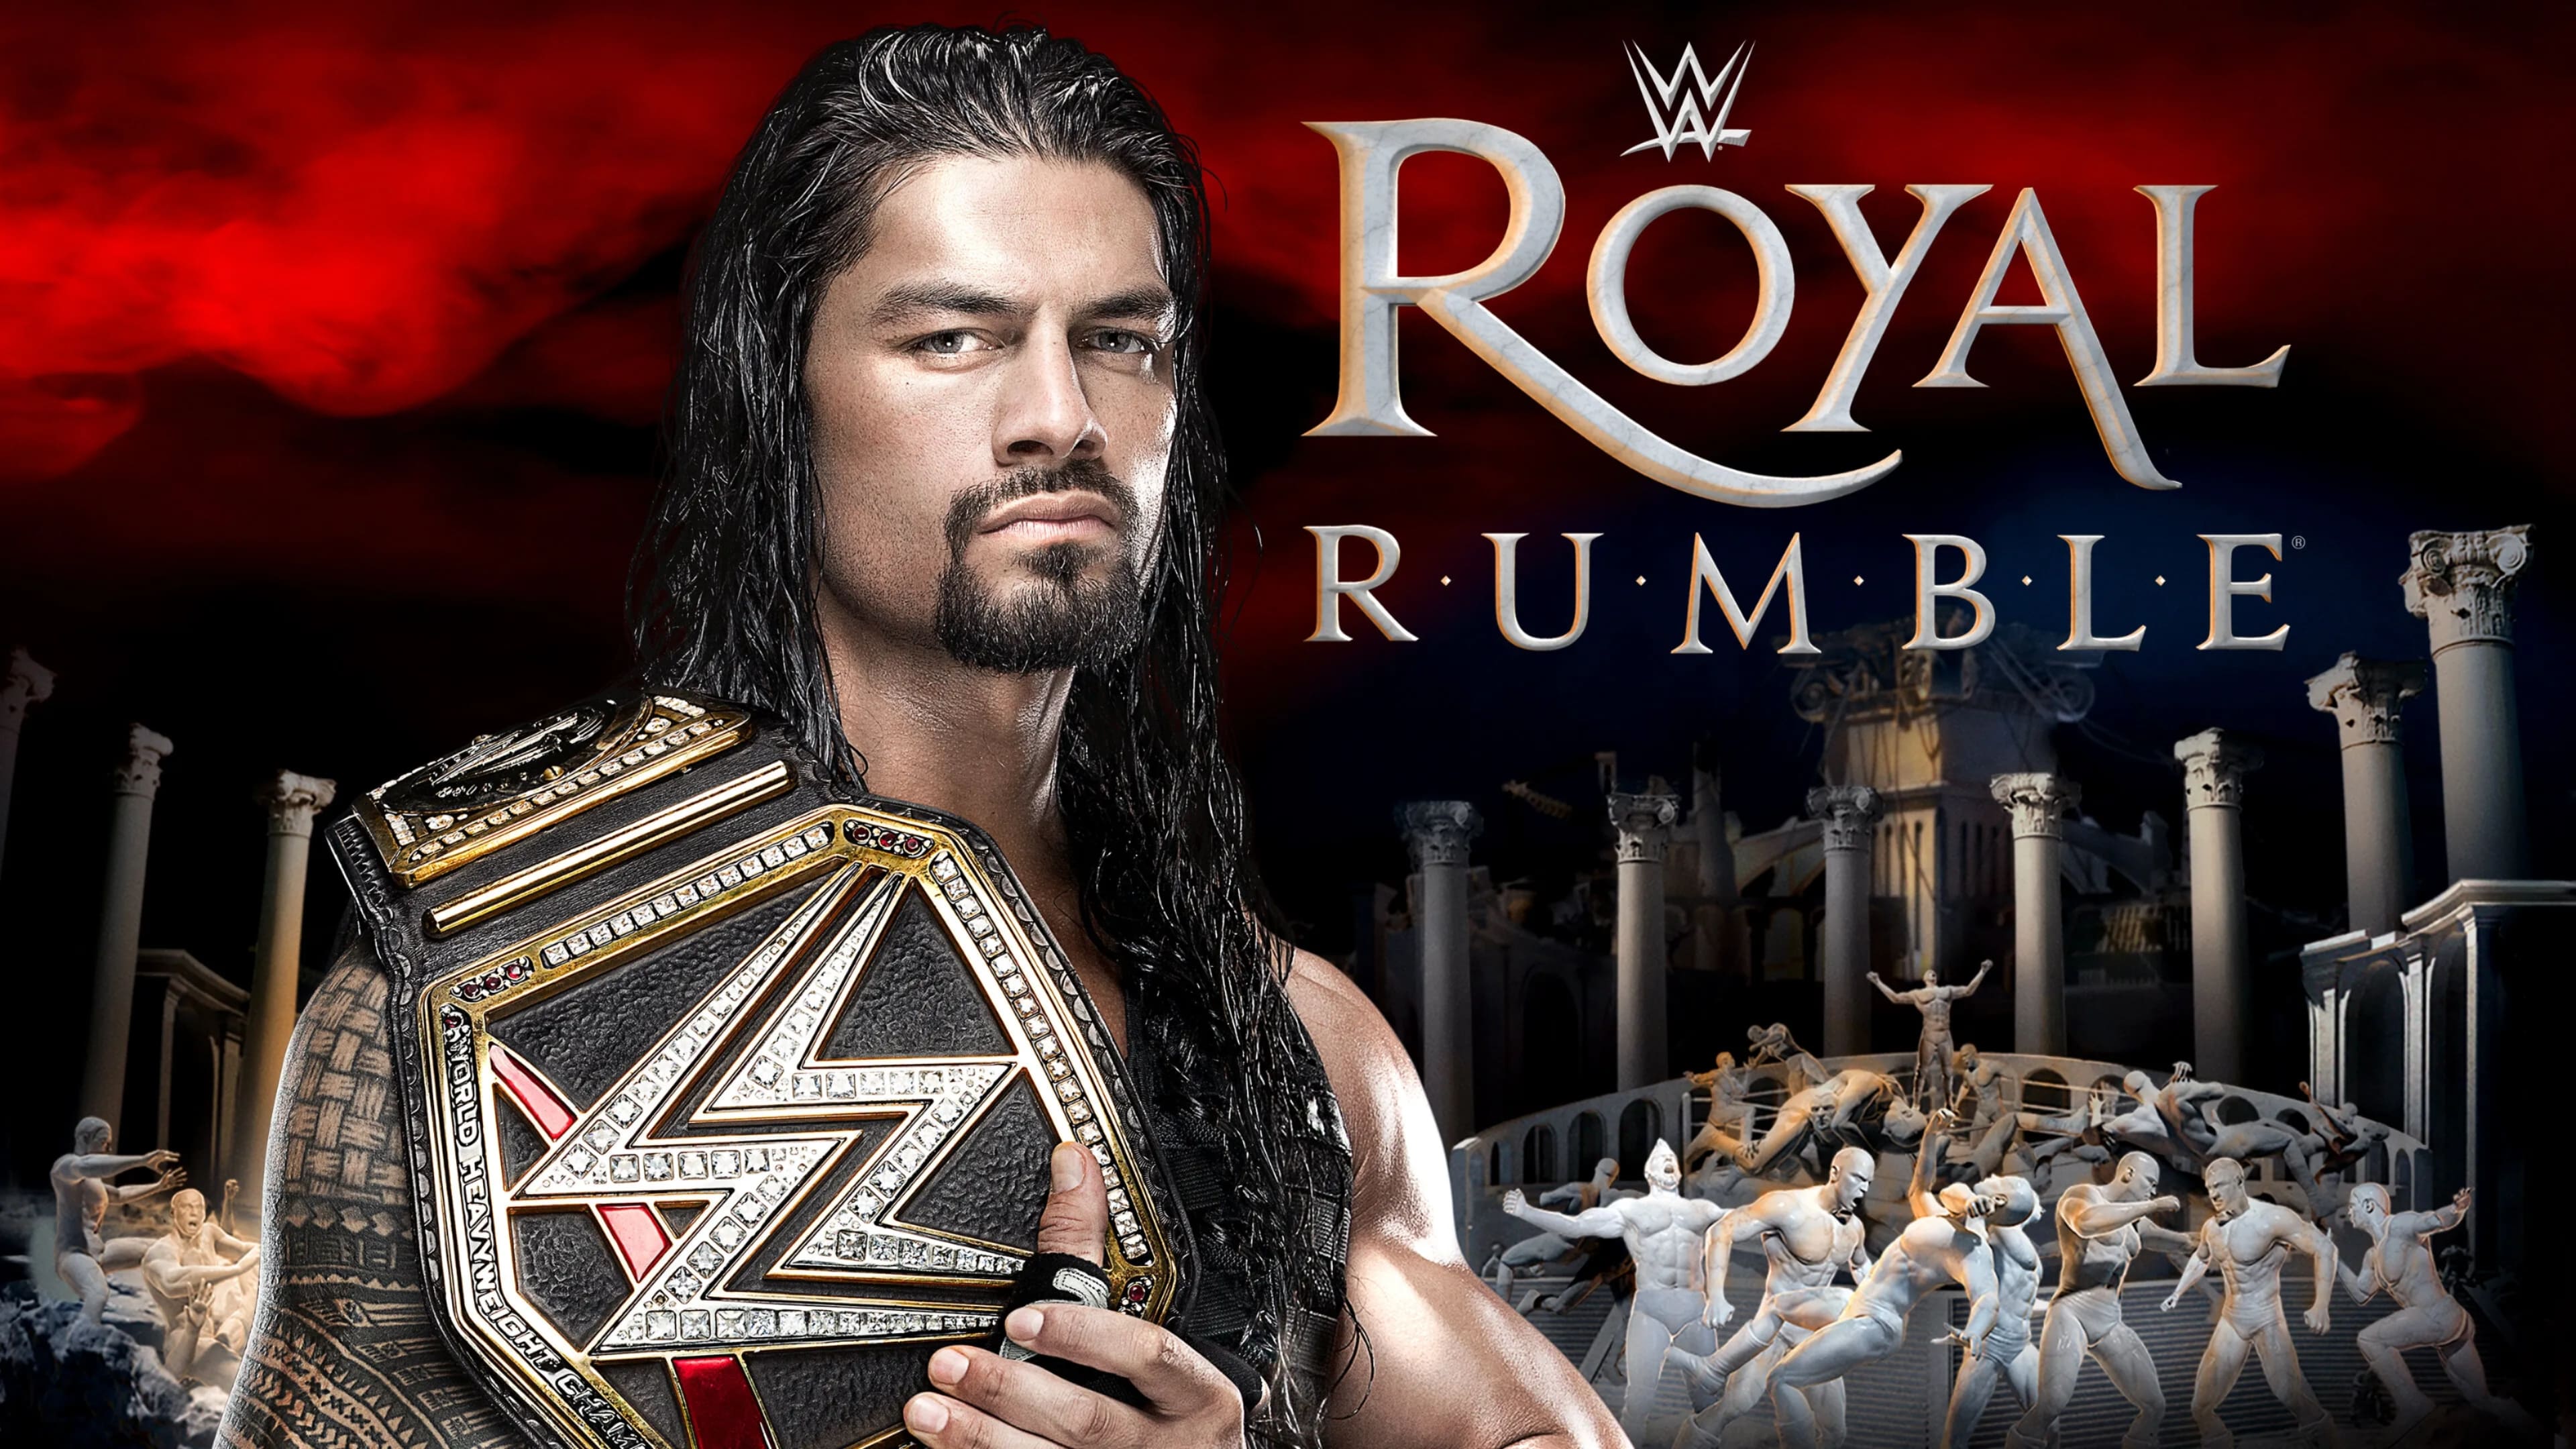 WWE Royal Rumble 2016 2016 123movies